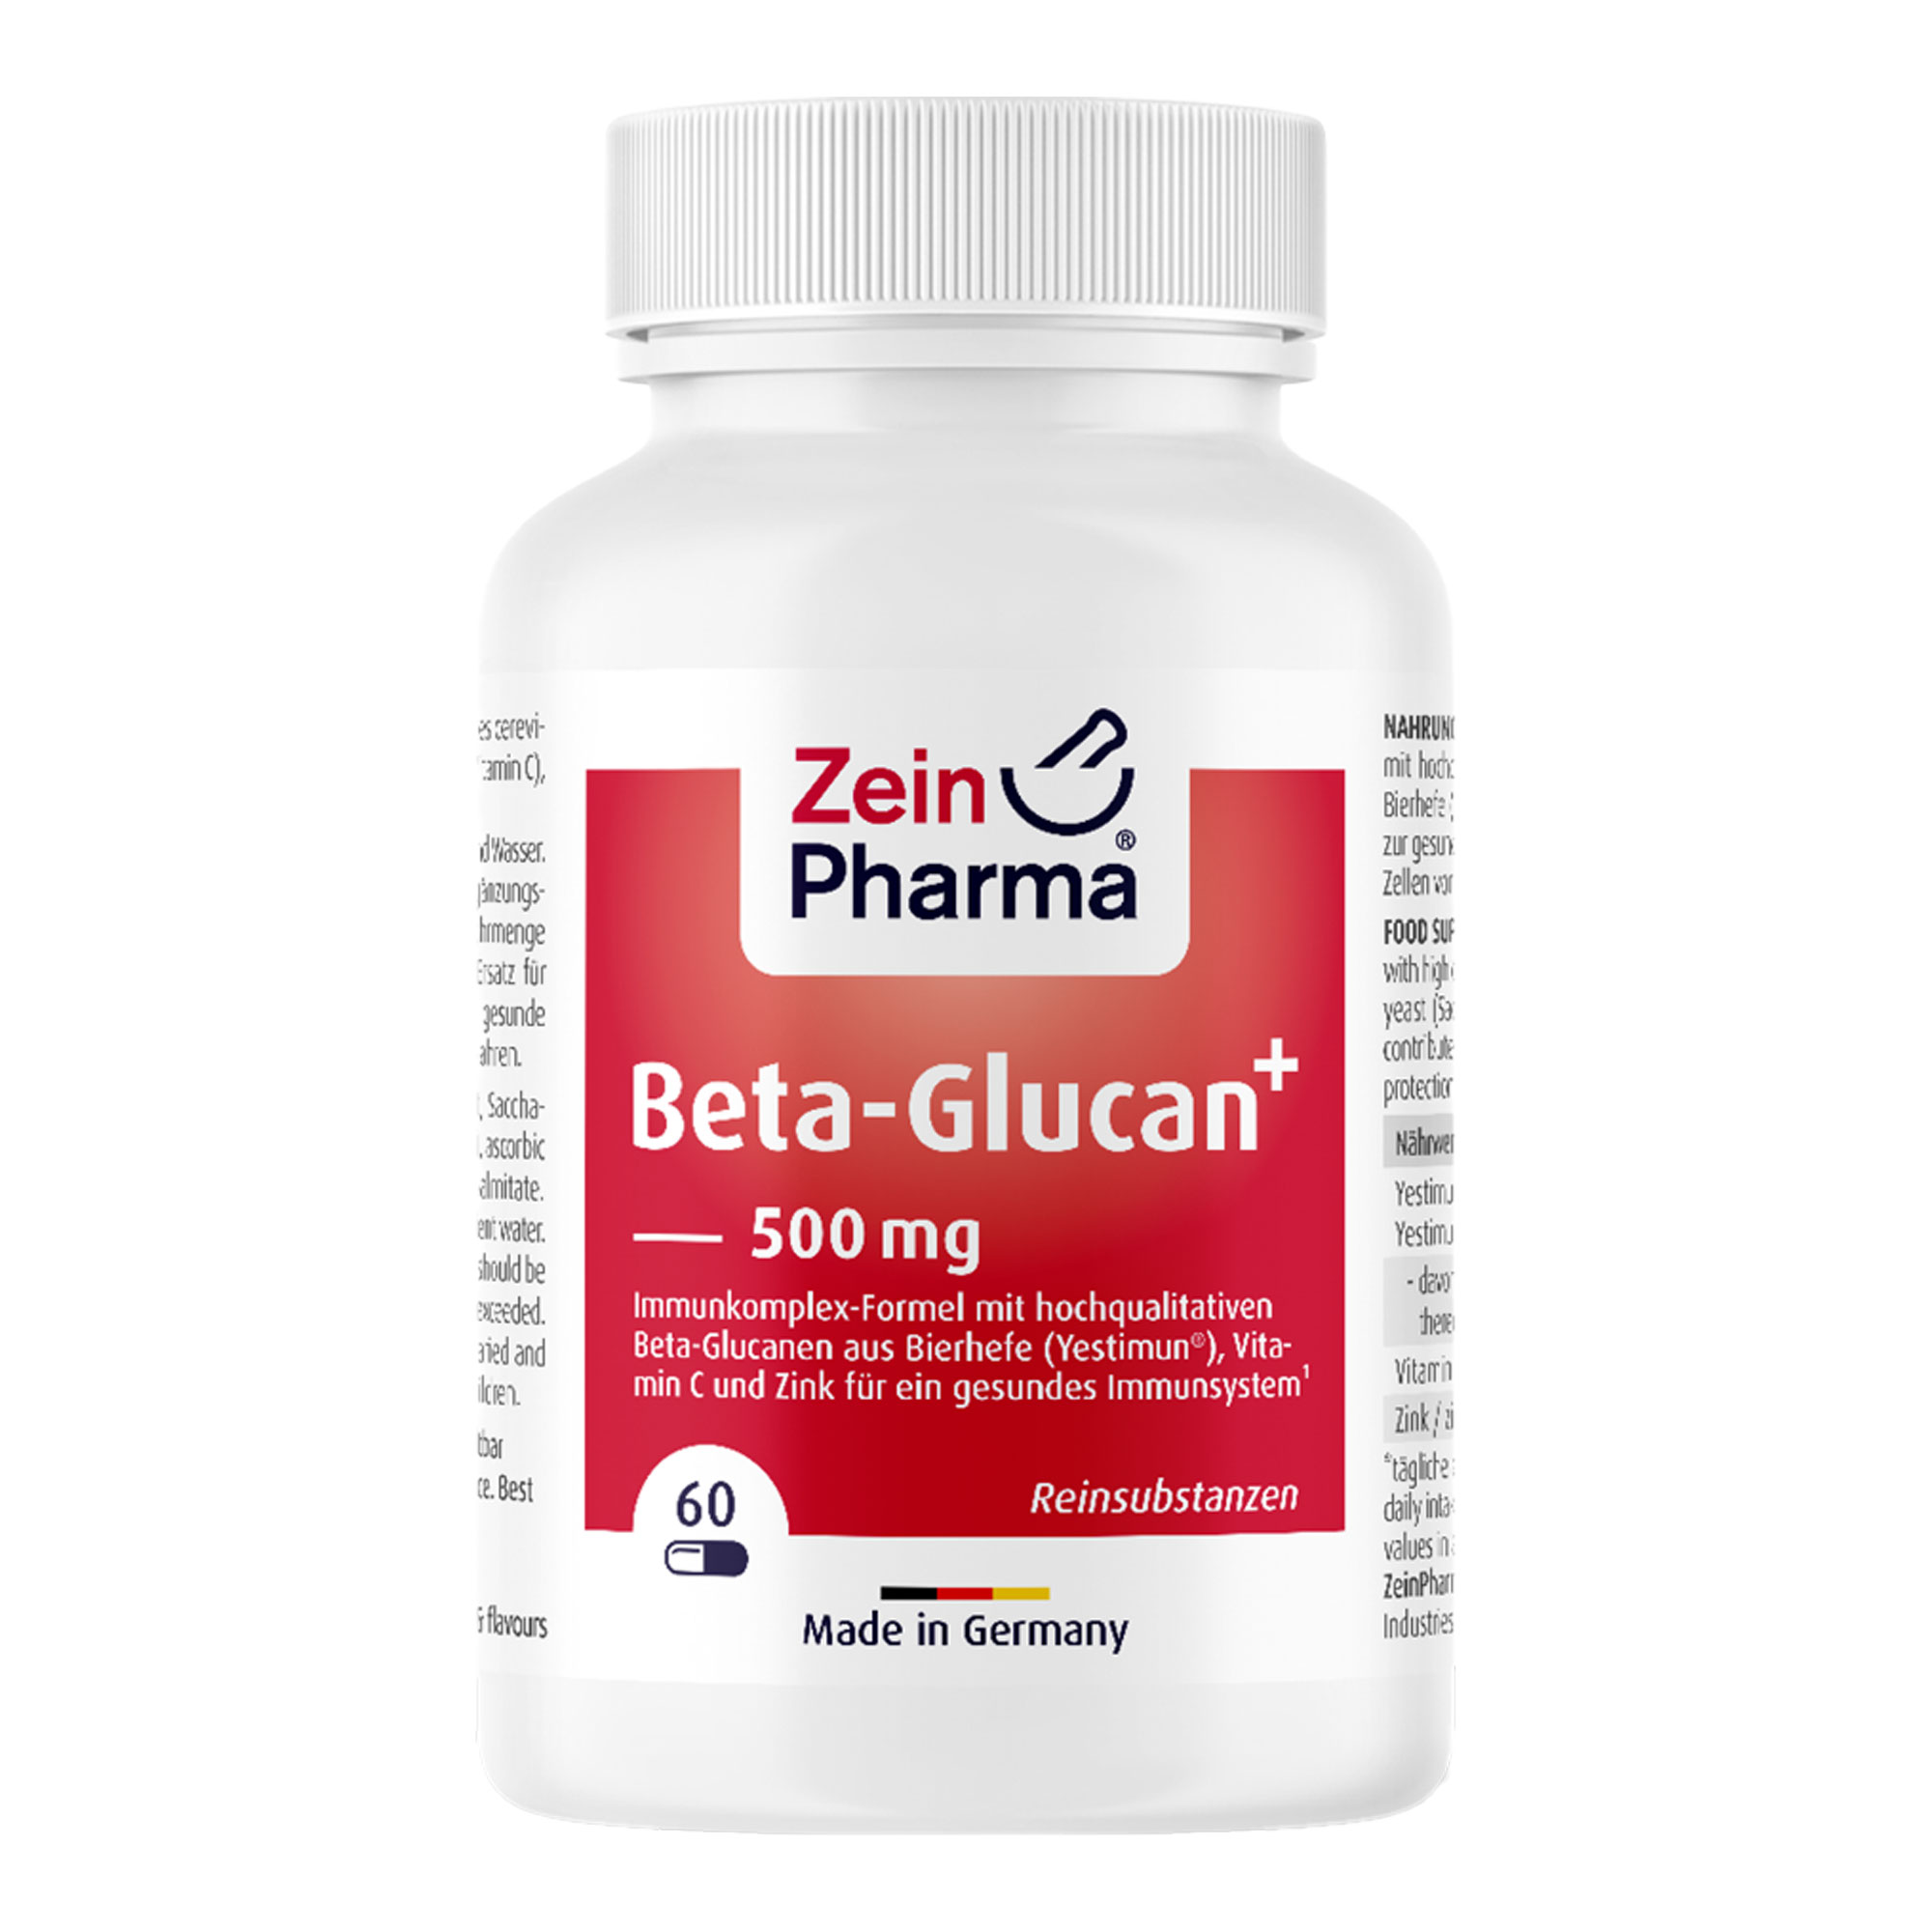 Nahrungsergänzungsmittel mit hochqualitativem (1,3)-(1,6)-ß-D-Glucan (Yestimun) aus Bierhefe, Vitamin C und Zink.